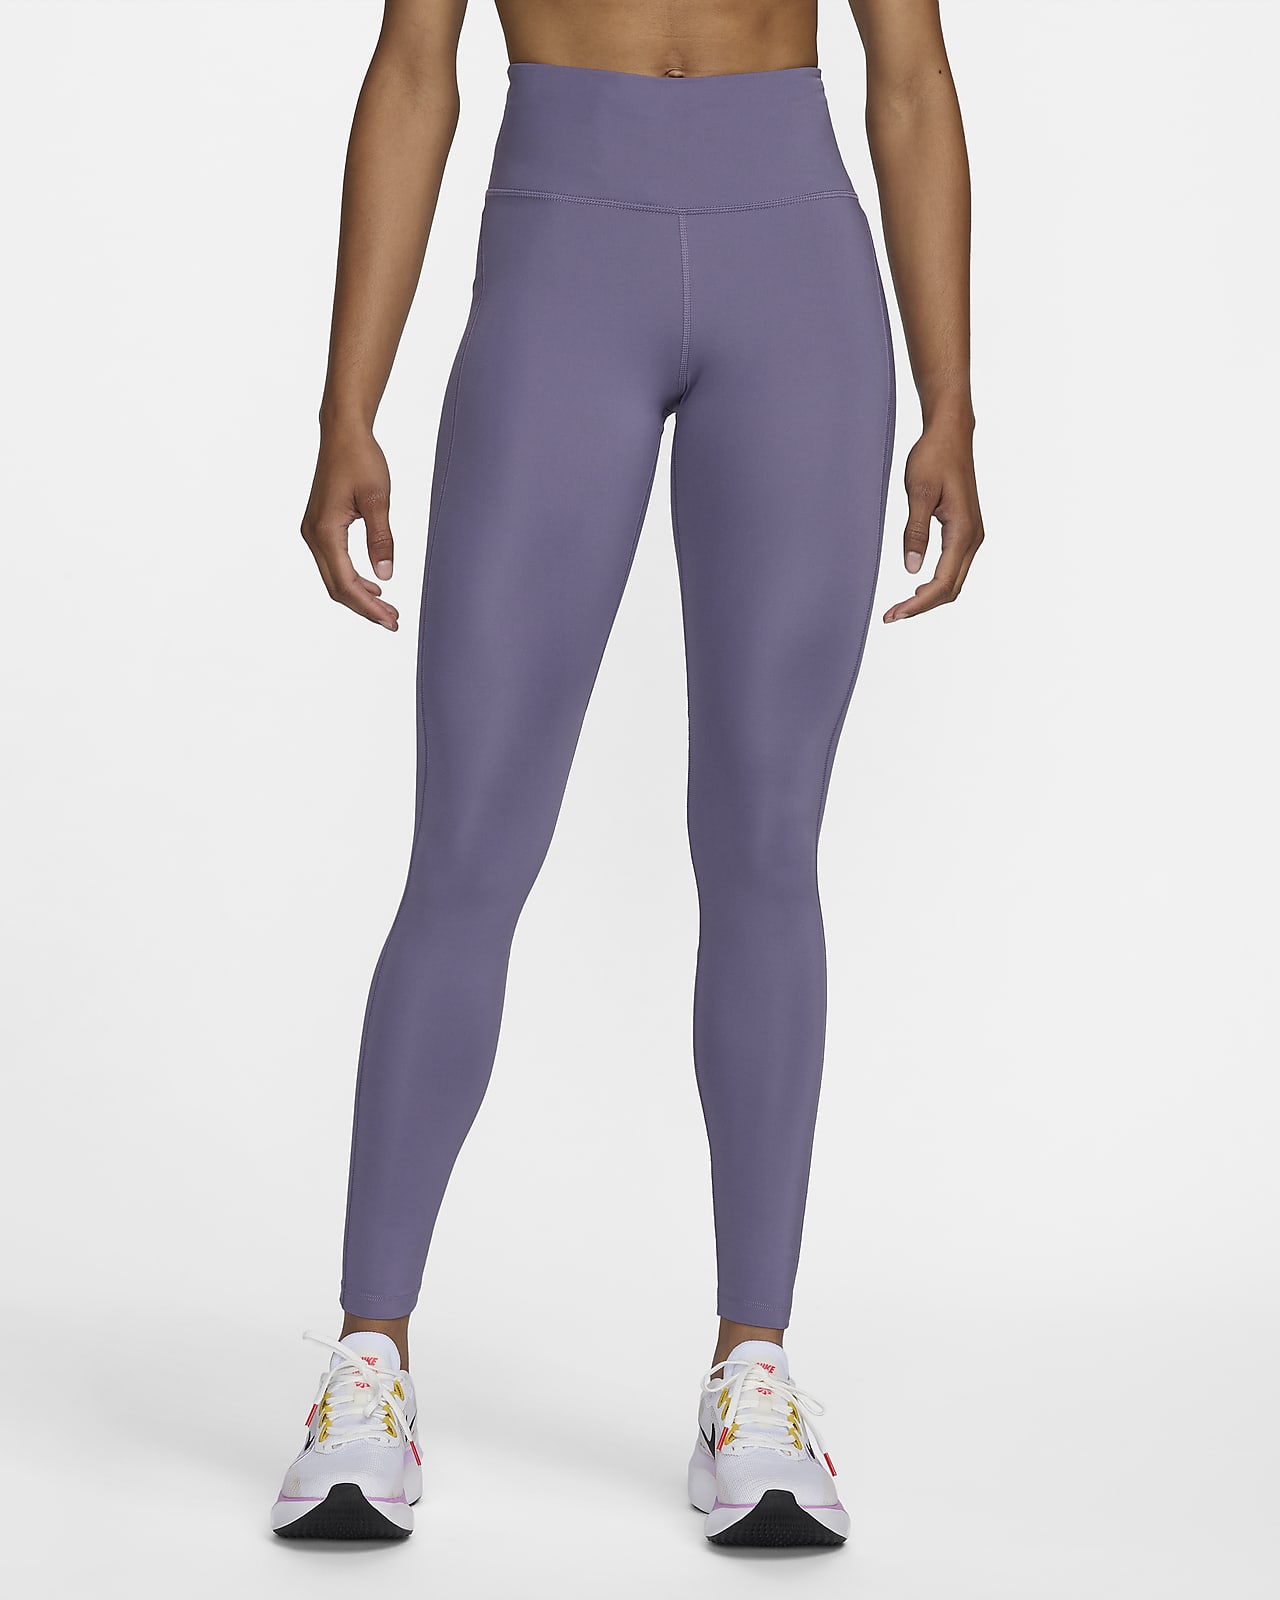 Γυναικείο κολάν μεσαίου ύψους για τρέξιμο με τσέπες Nike Epic Fast